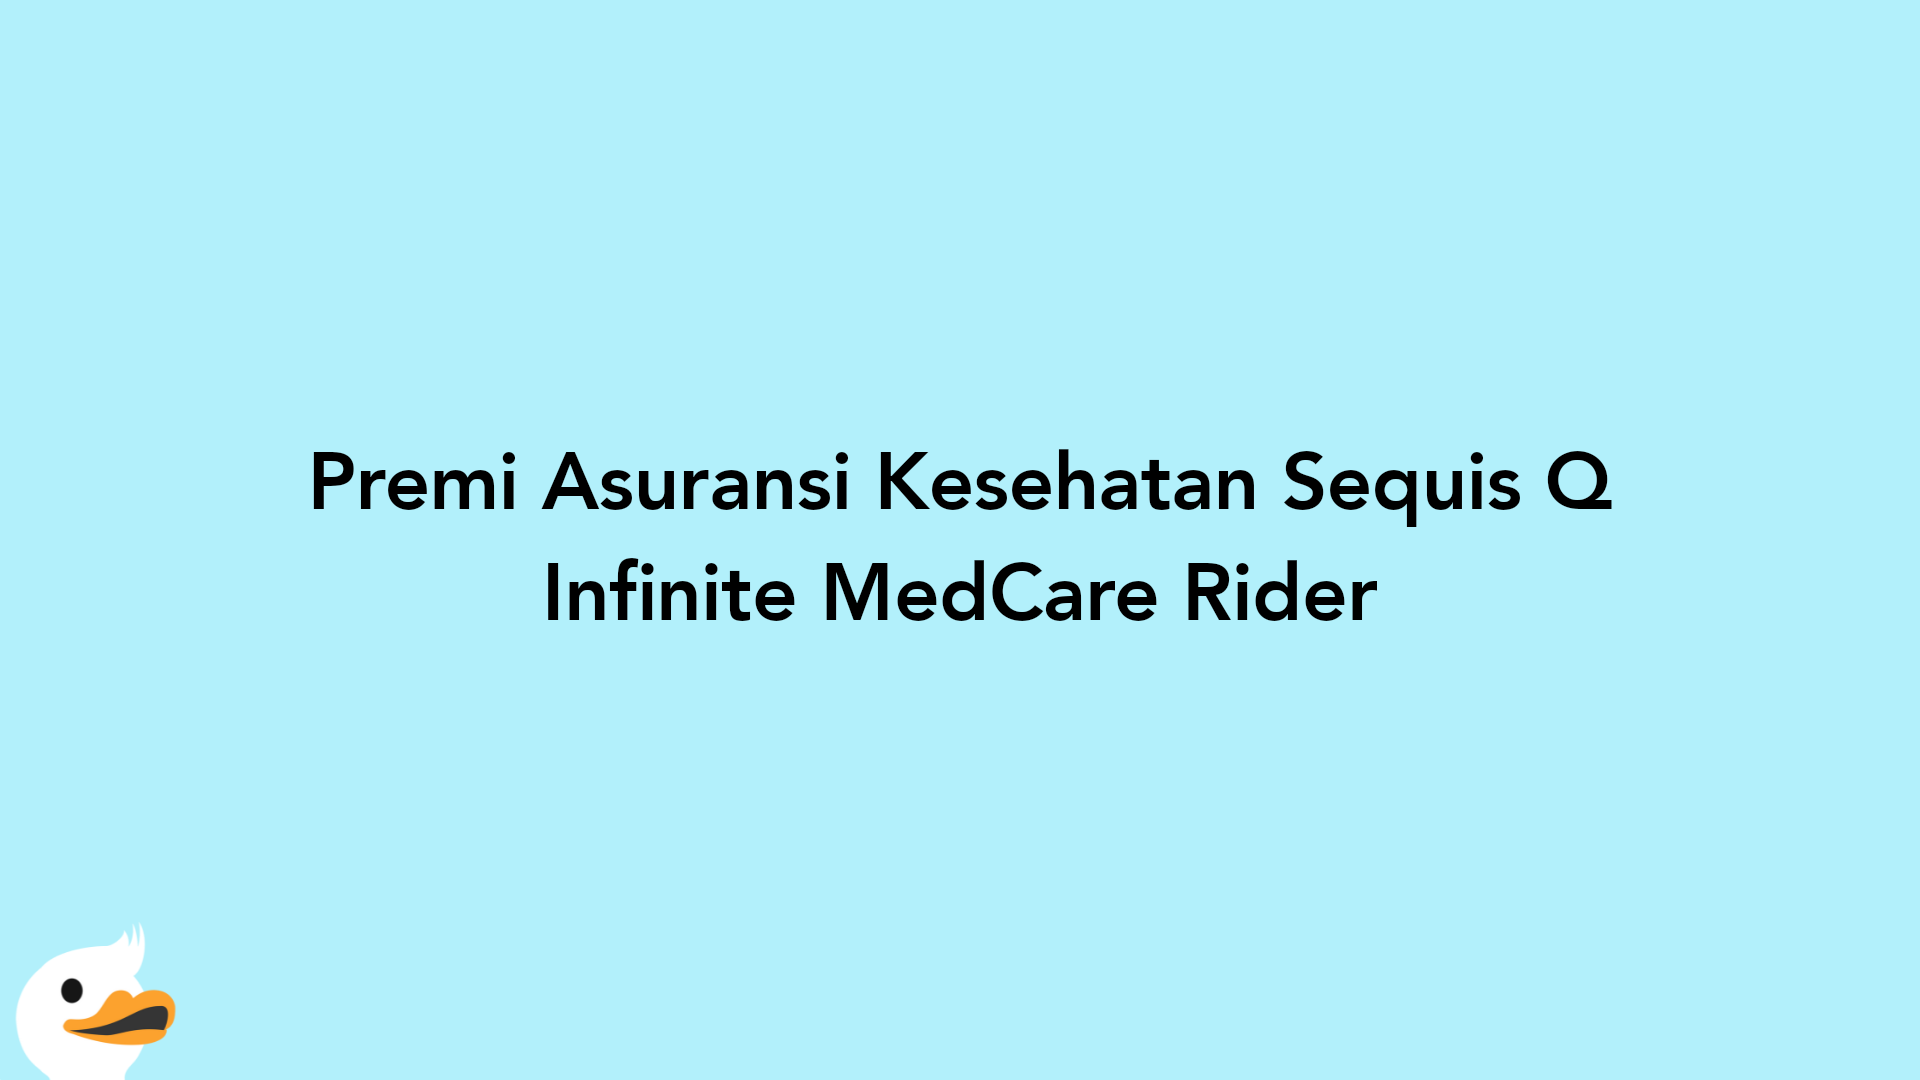 Premi Asuransi Kesehatan Sequis Q Infinite MedCare Rider